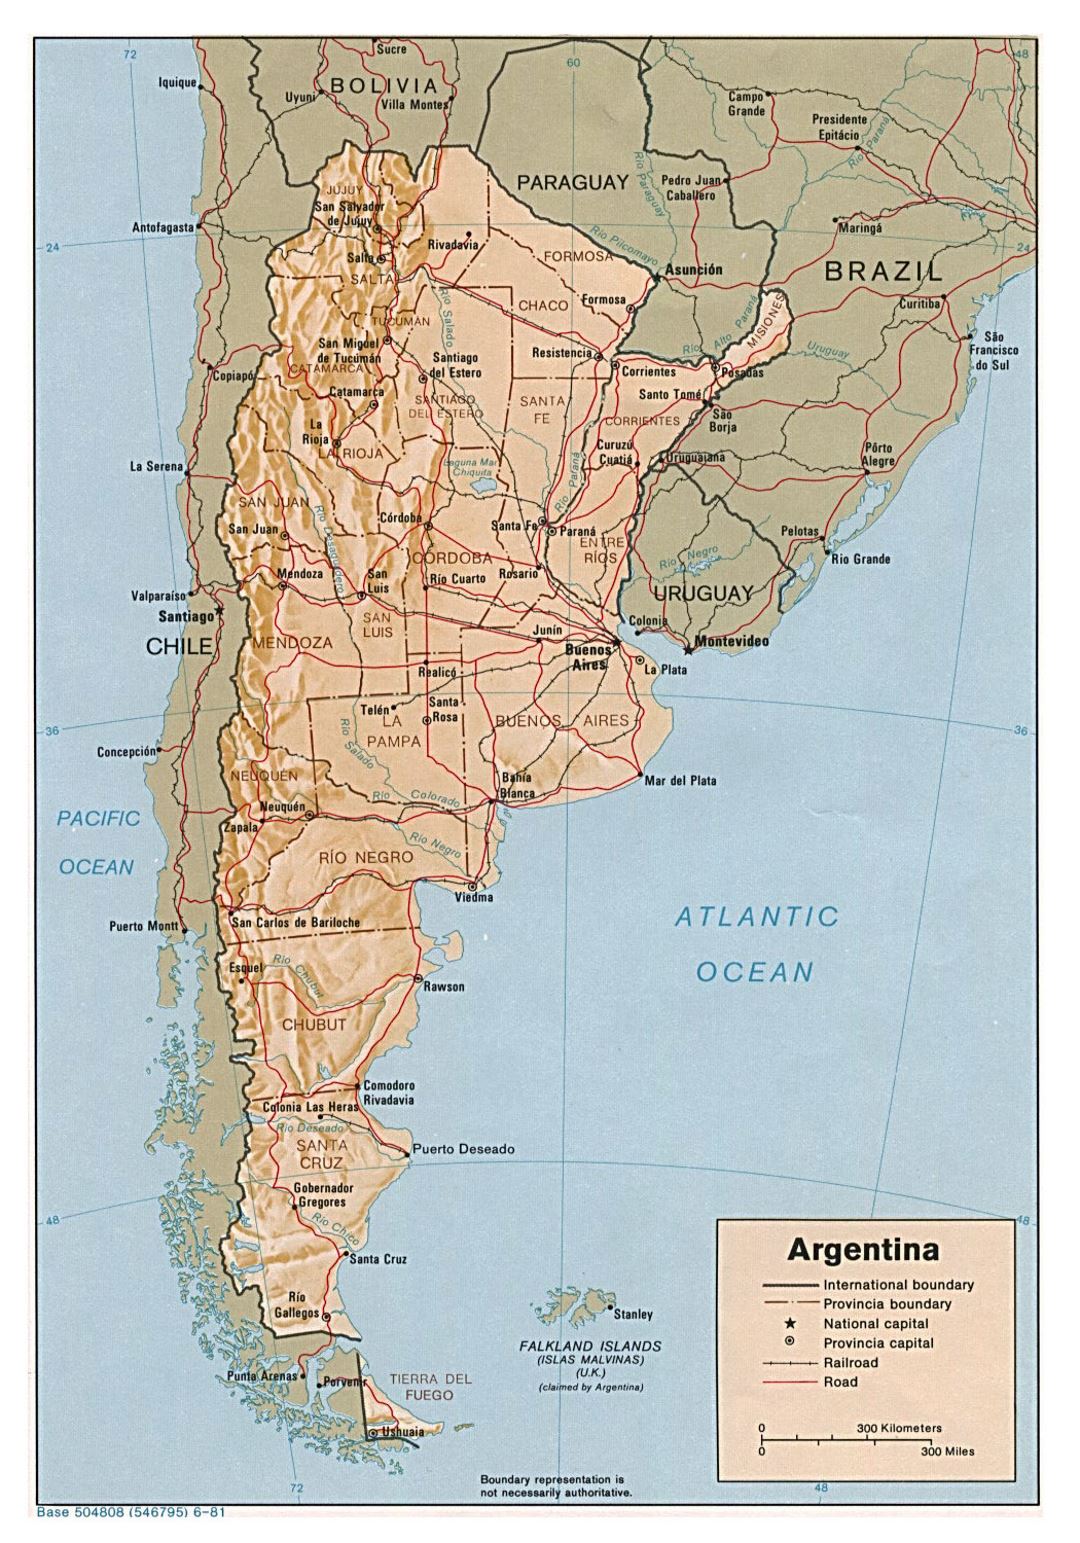 Grande mapa político y administrativo de Argentina con socorro, carreteras y principales ciudades - 1981